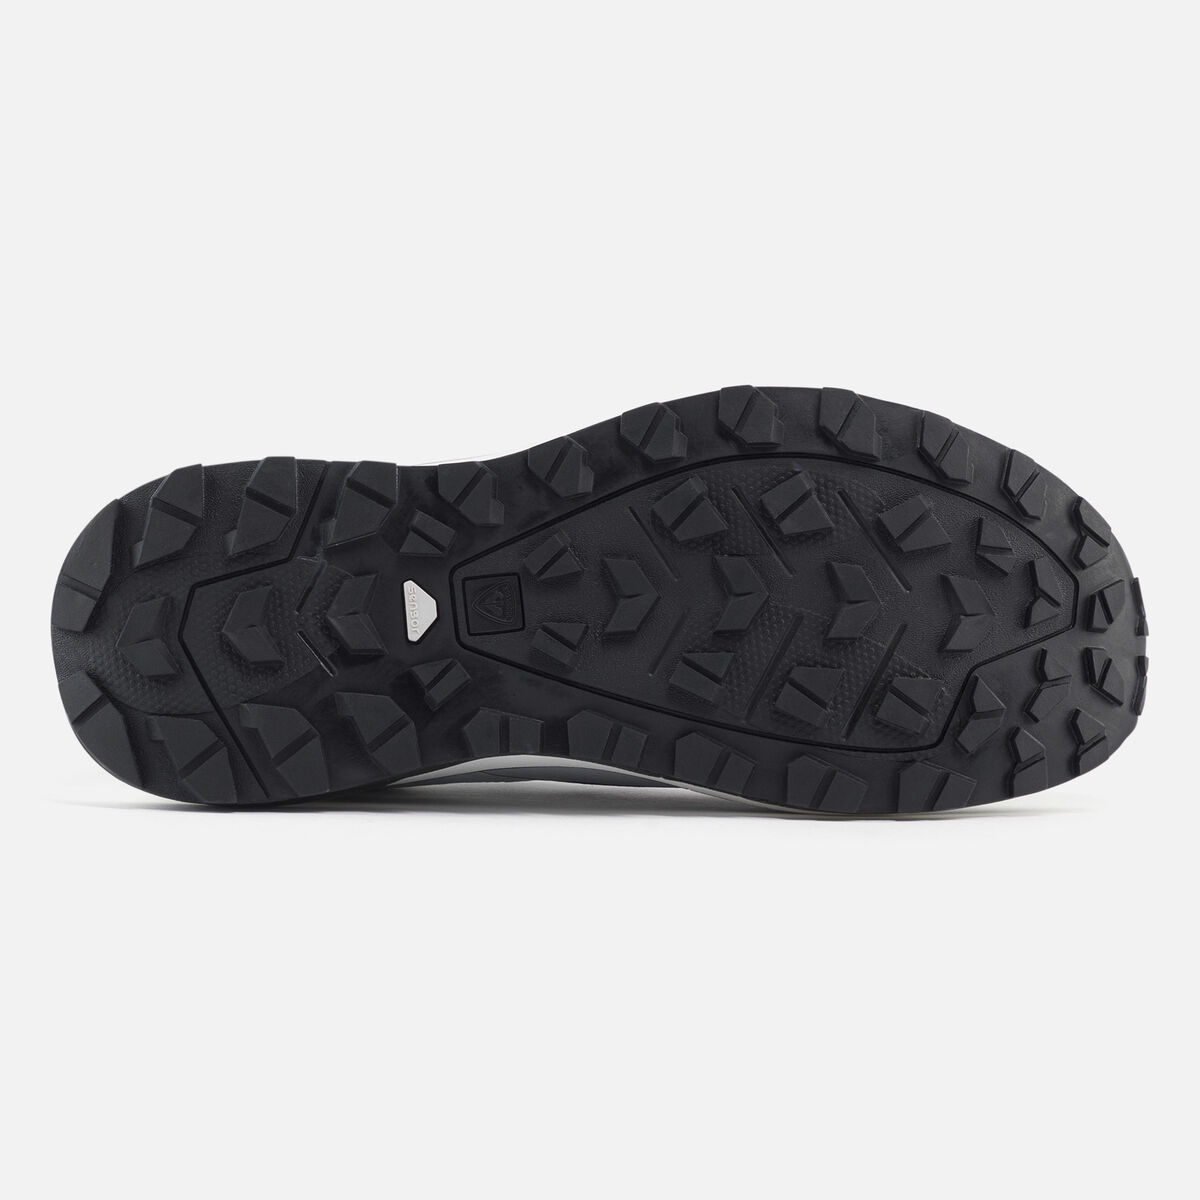 Zapatillas ligeras Active outdoor de color negro para hombre